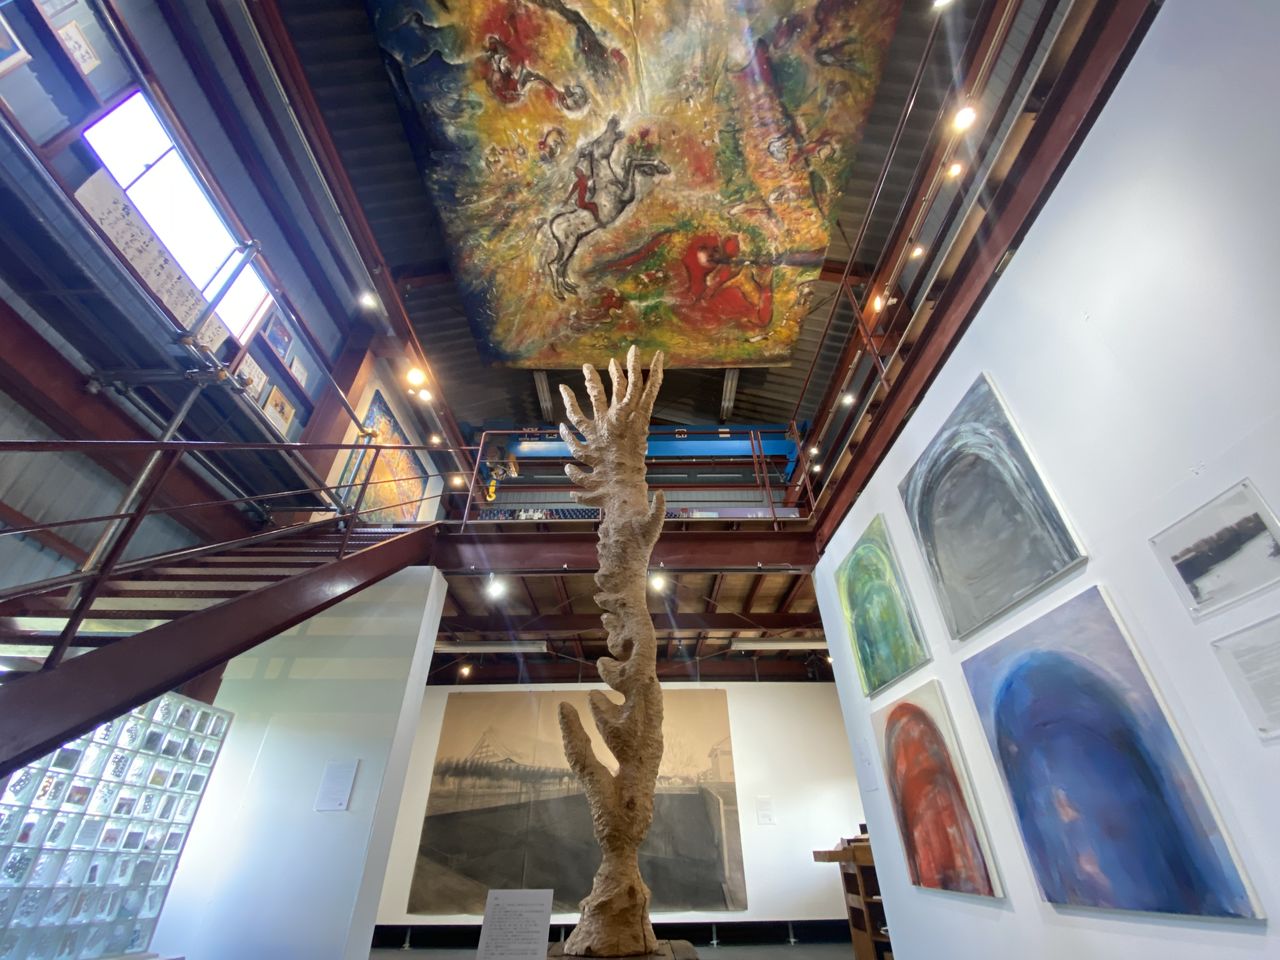 يضم متحف ”متحفنا“ 50 لوحة ومنحوتة وصور فوتوغرافية وأعمال فنية أخرى. (© ناكاسوجي جون)